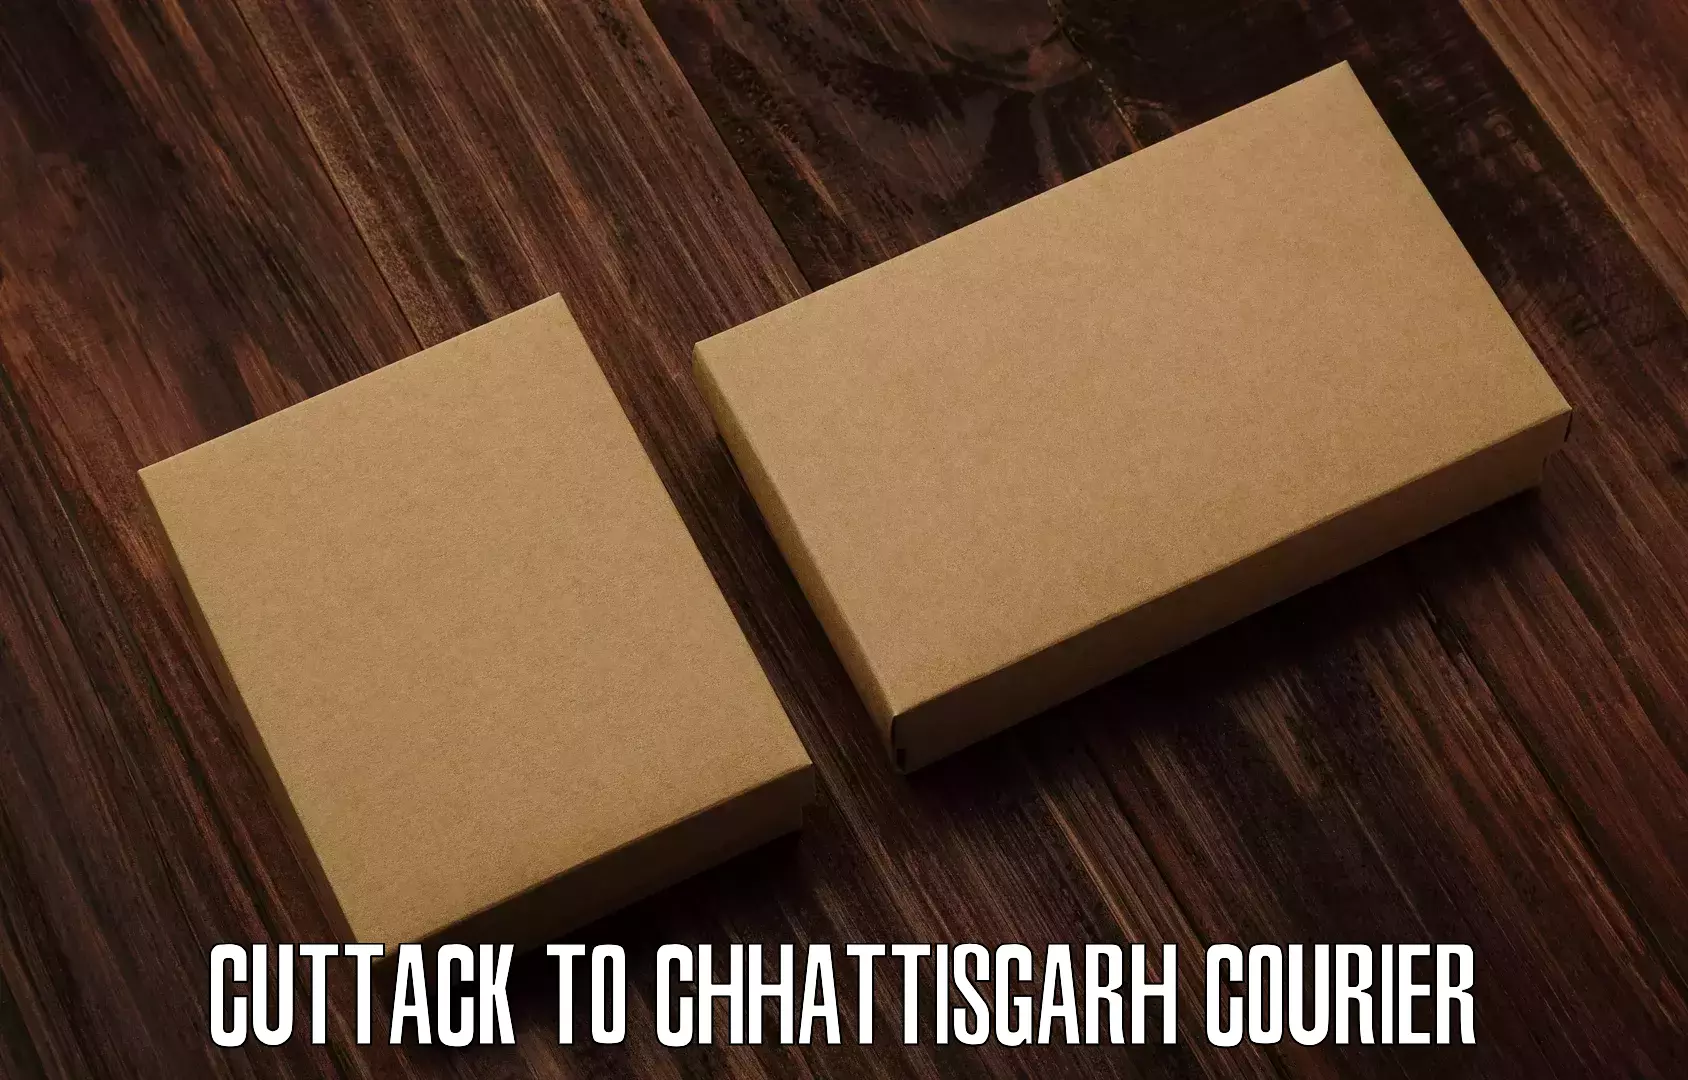 Individual parcel service Cuttack to Raigarh Chhattisgarh